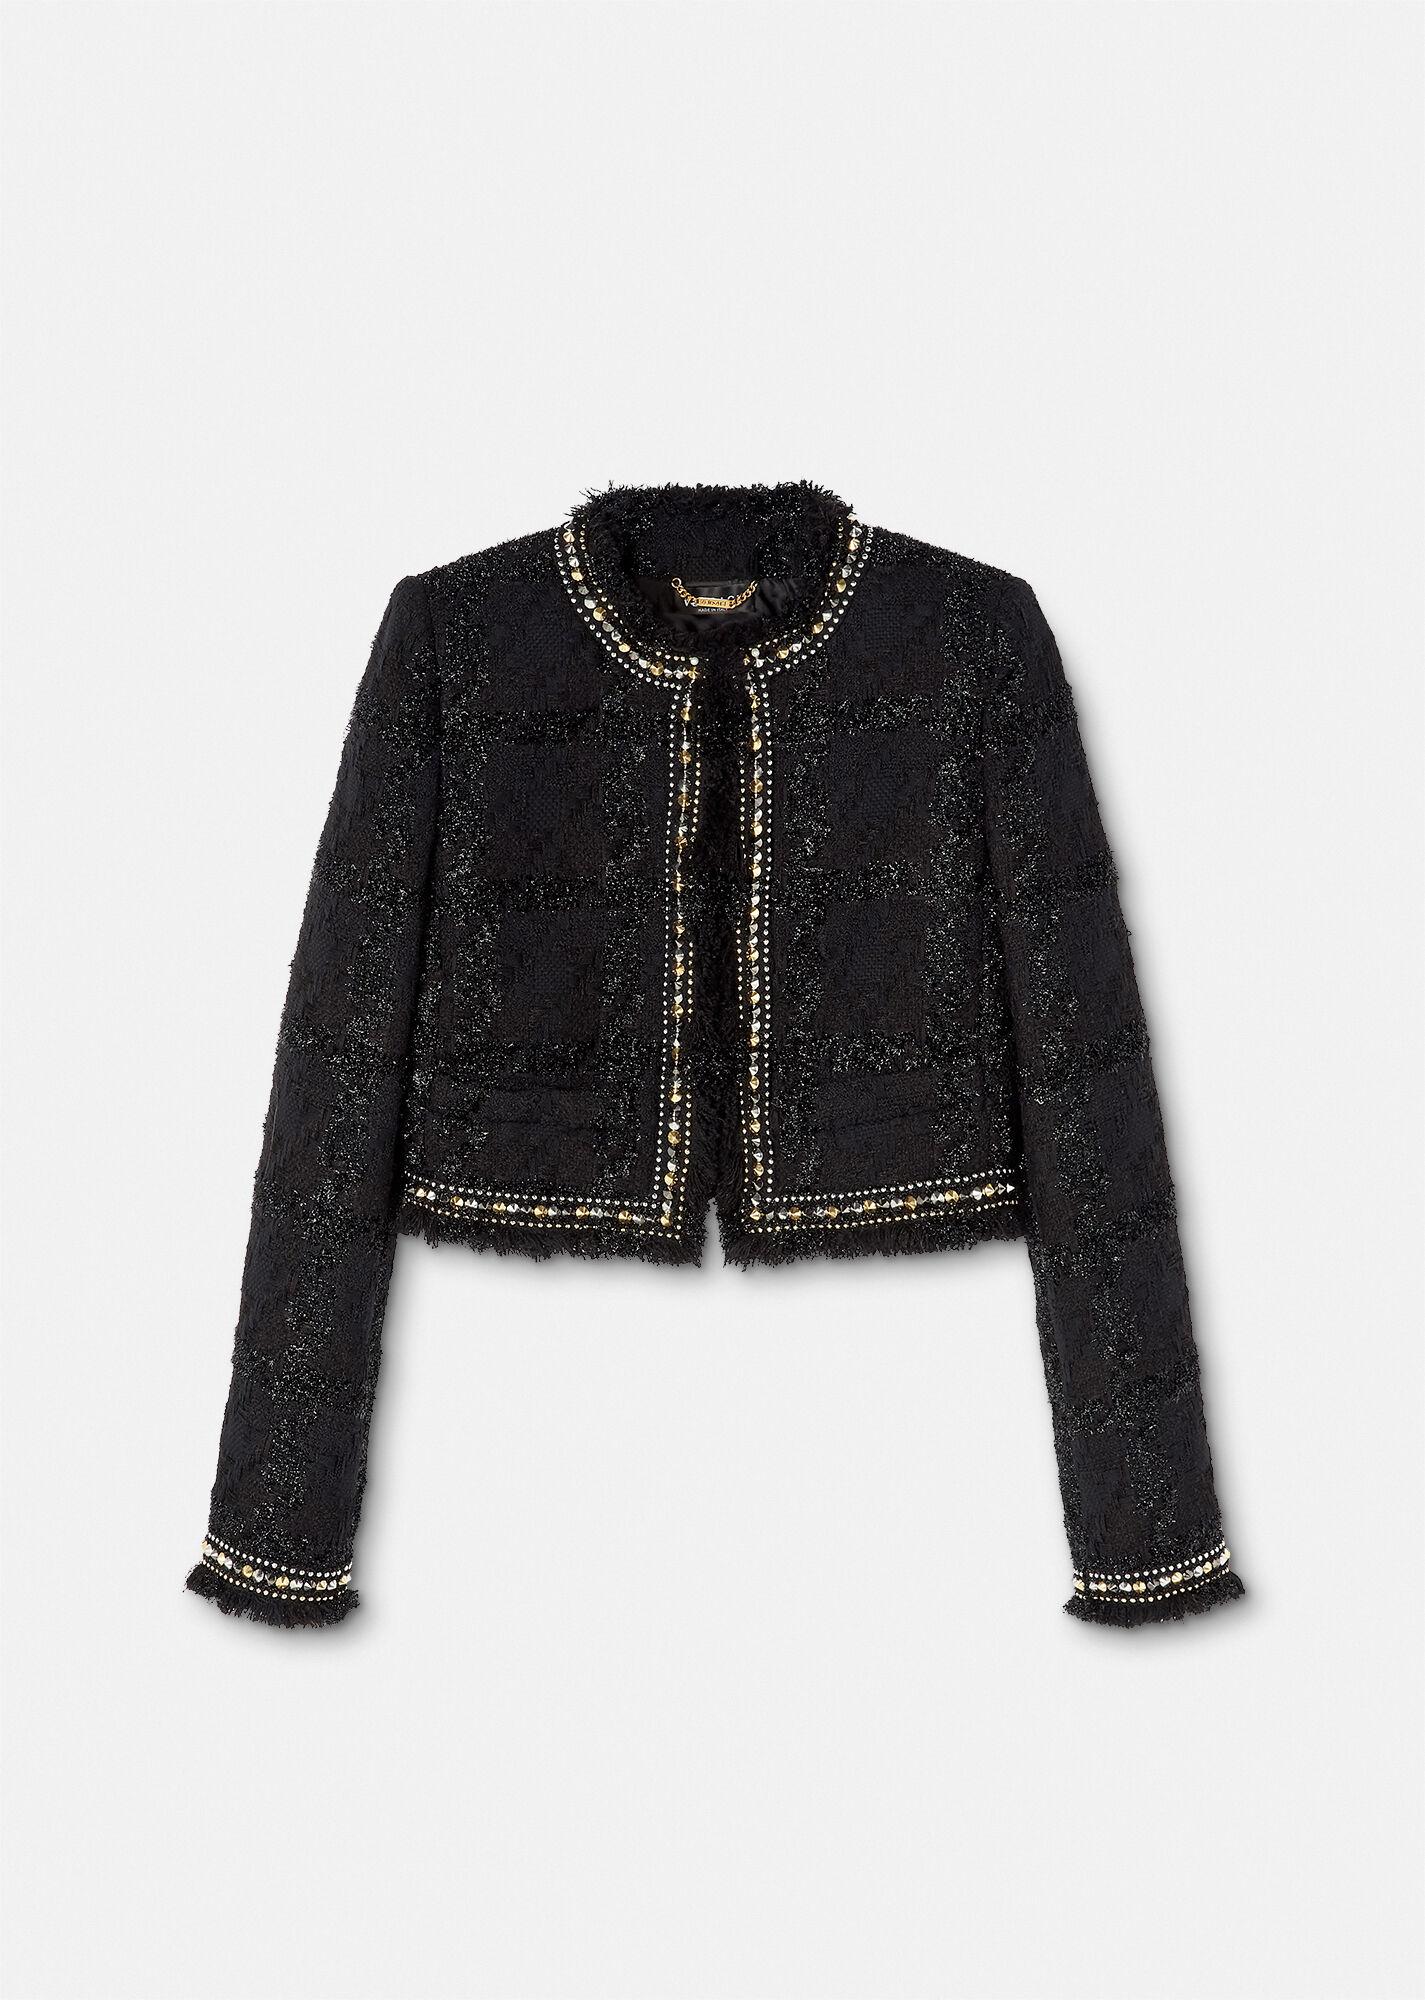 Versace Spiked Tweed Blazer in Black | Lyst